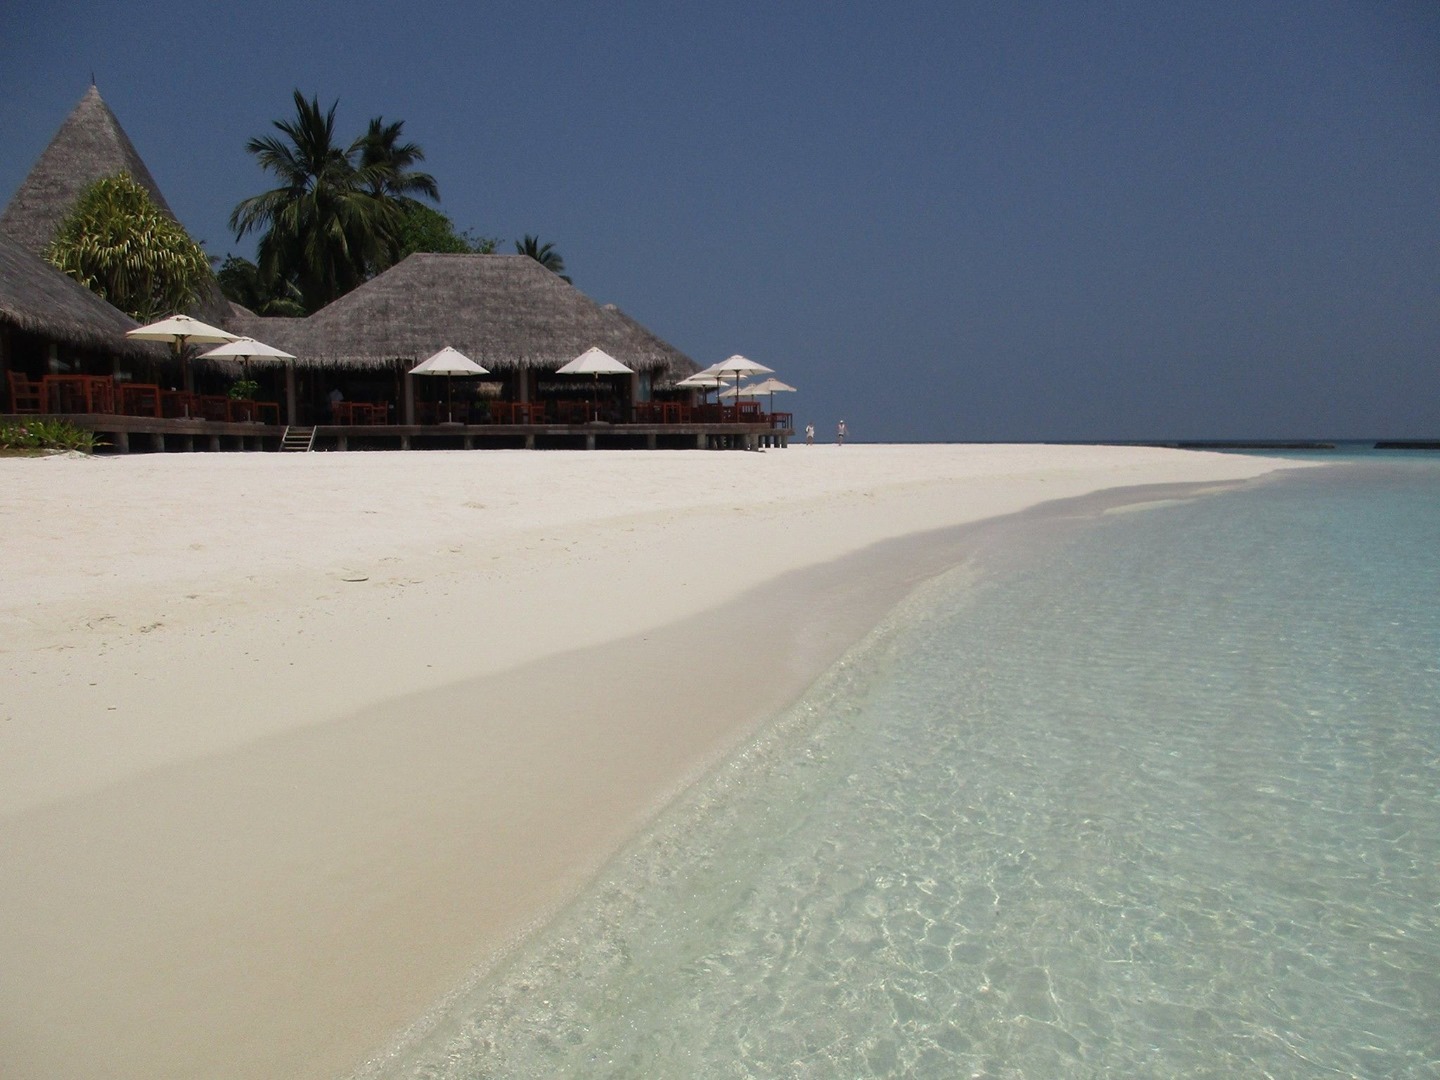 Indonesia Juga Punya, Viral Pantai Maldives Seperti Maladewa, Ke Lamongan Liburanya Wajib Kesini